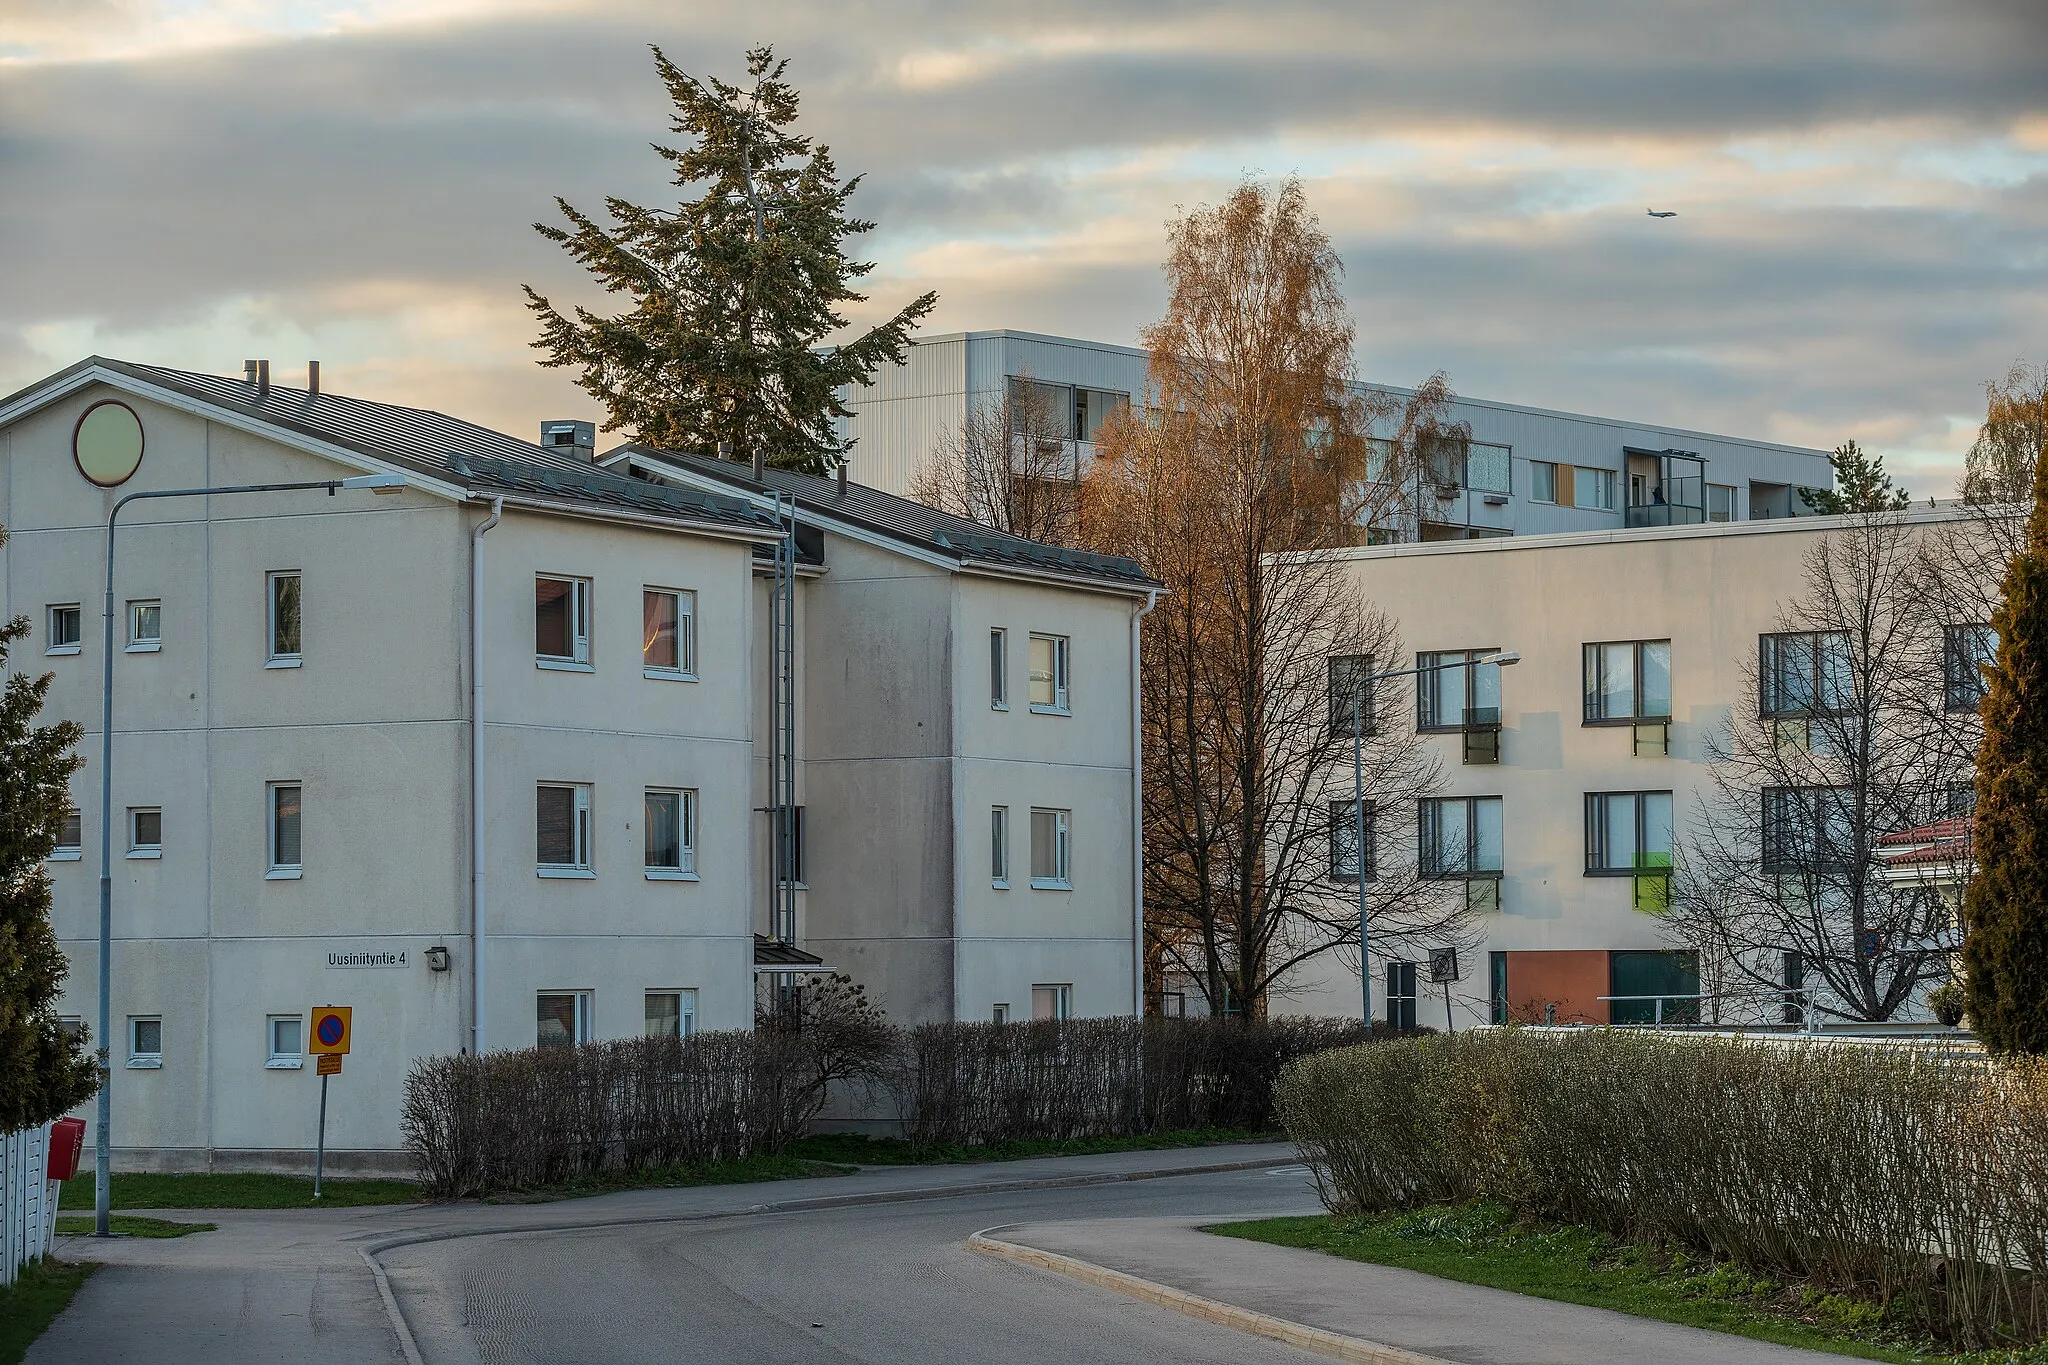 Photo showing: Apartment buildings by Malmitie street in Simonkylä, Vantaa, Finland in 2022 May. On the left is Uusiniityntie 4 from 1987. On the right is Uusiniityntie 3 from 2014. The higher apartment block above is Malminiitynpolku 3 built in 1970.